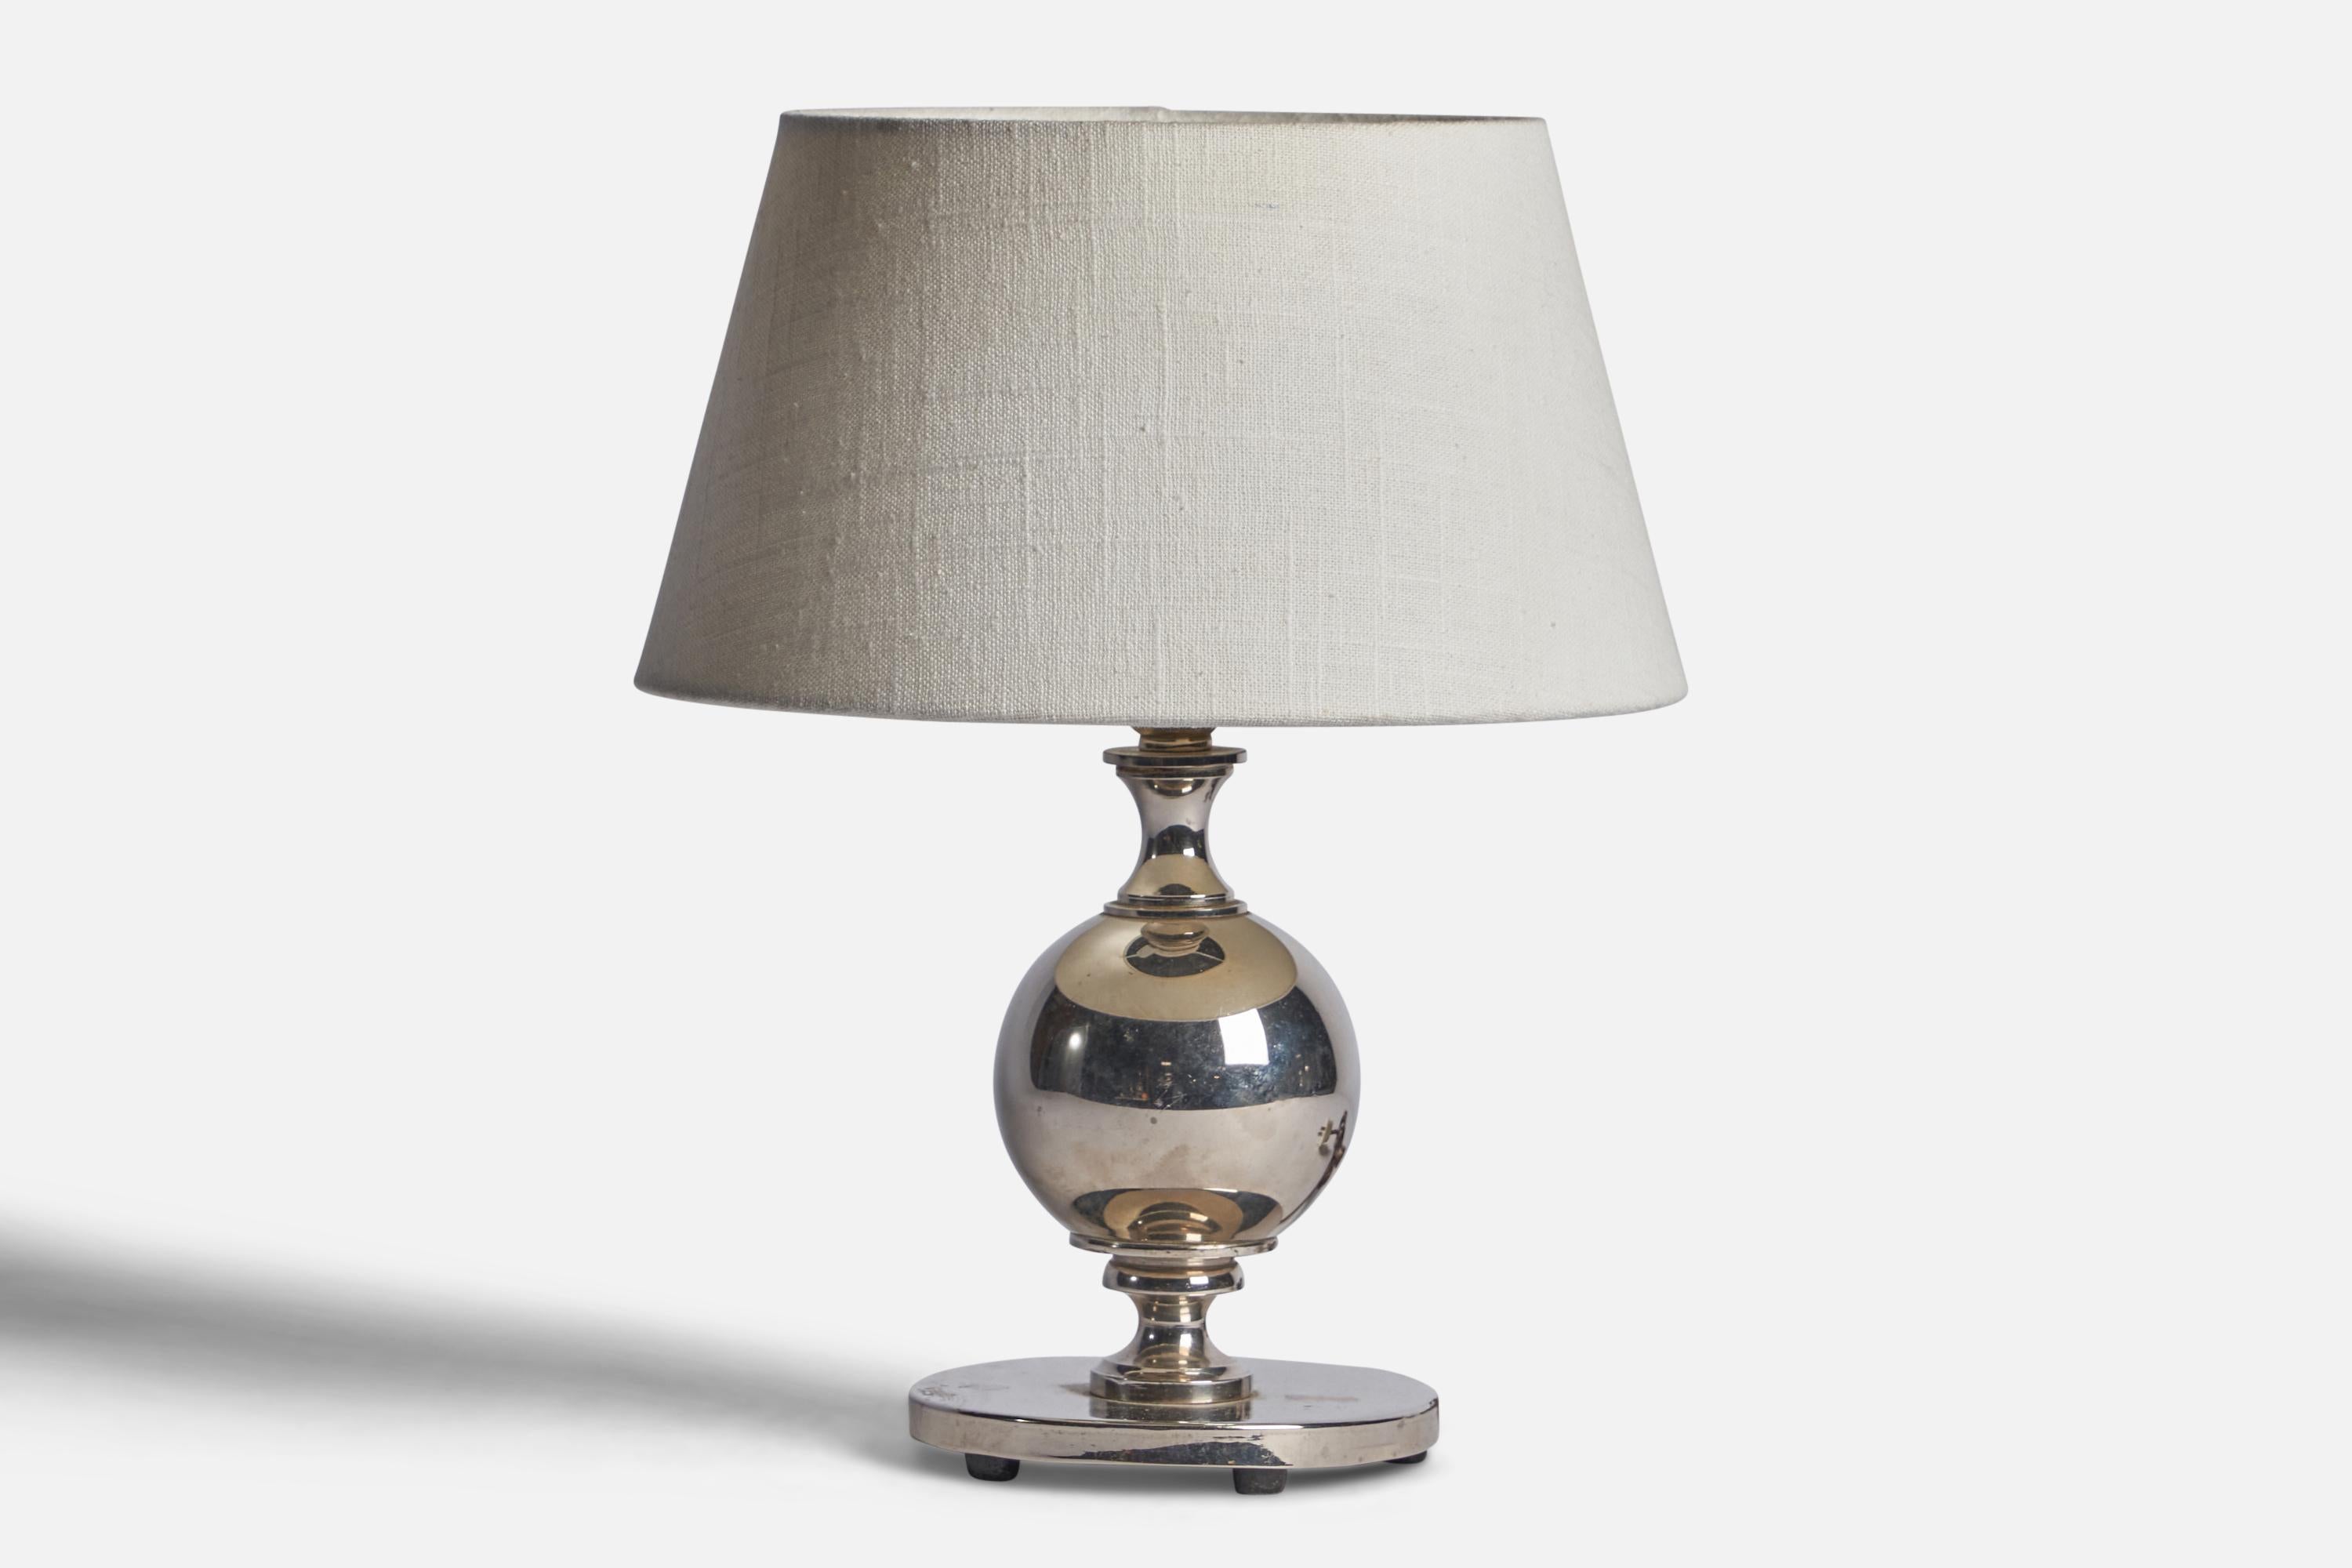 Lampe de table en métal argenté conçue et produite en Suède, c. 1930.

Dimensions de la lampe (pouces) : 10